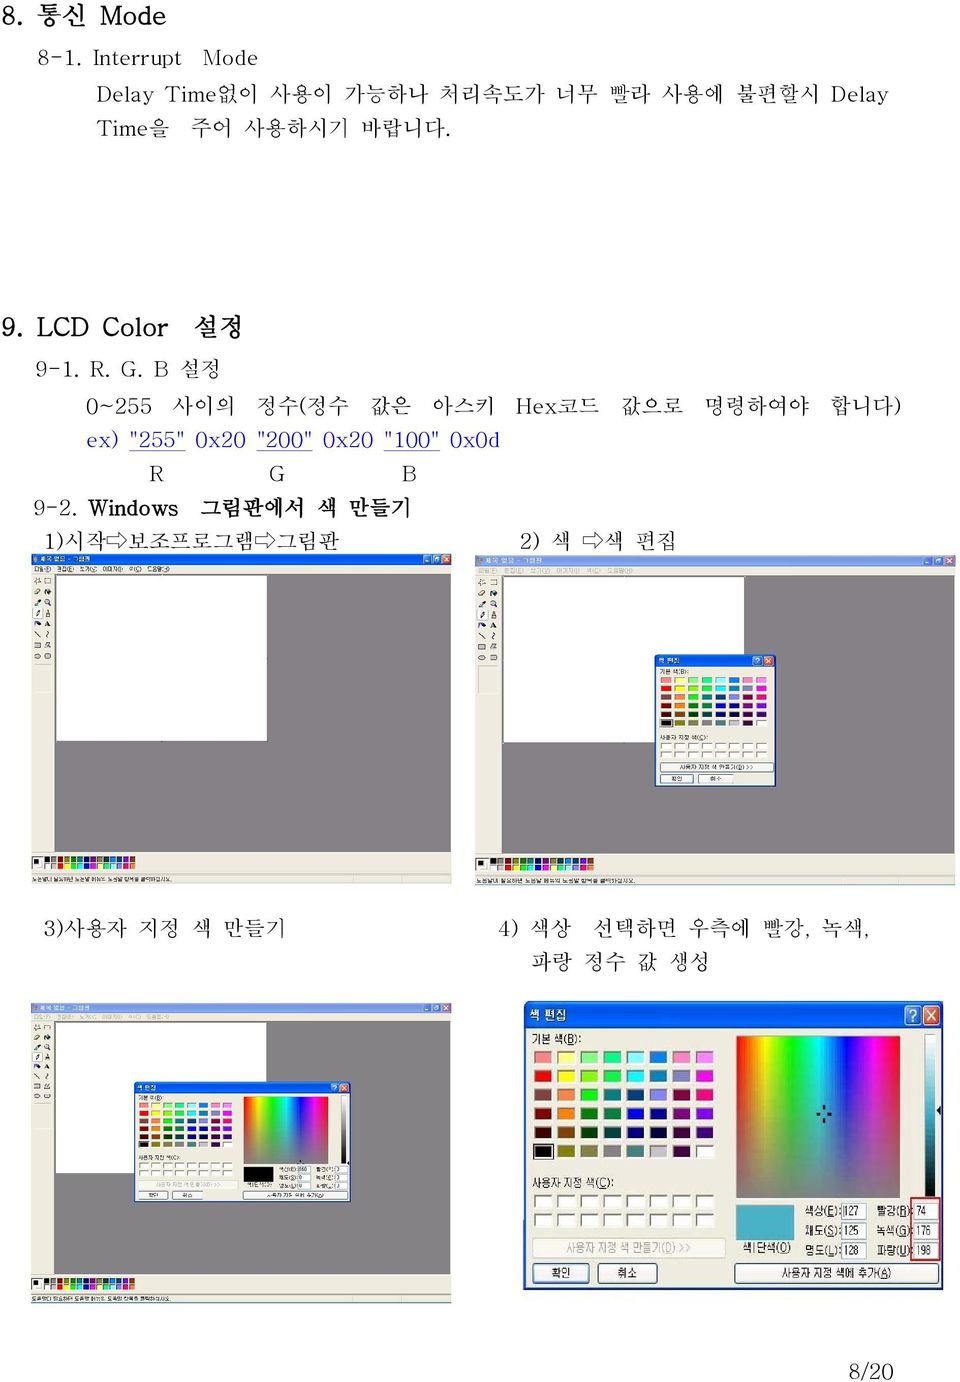 Delay 9. LCD Color 9-1. R. G.